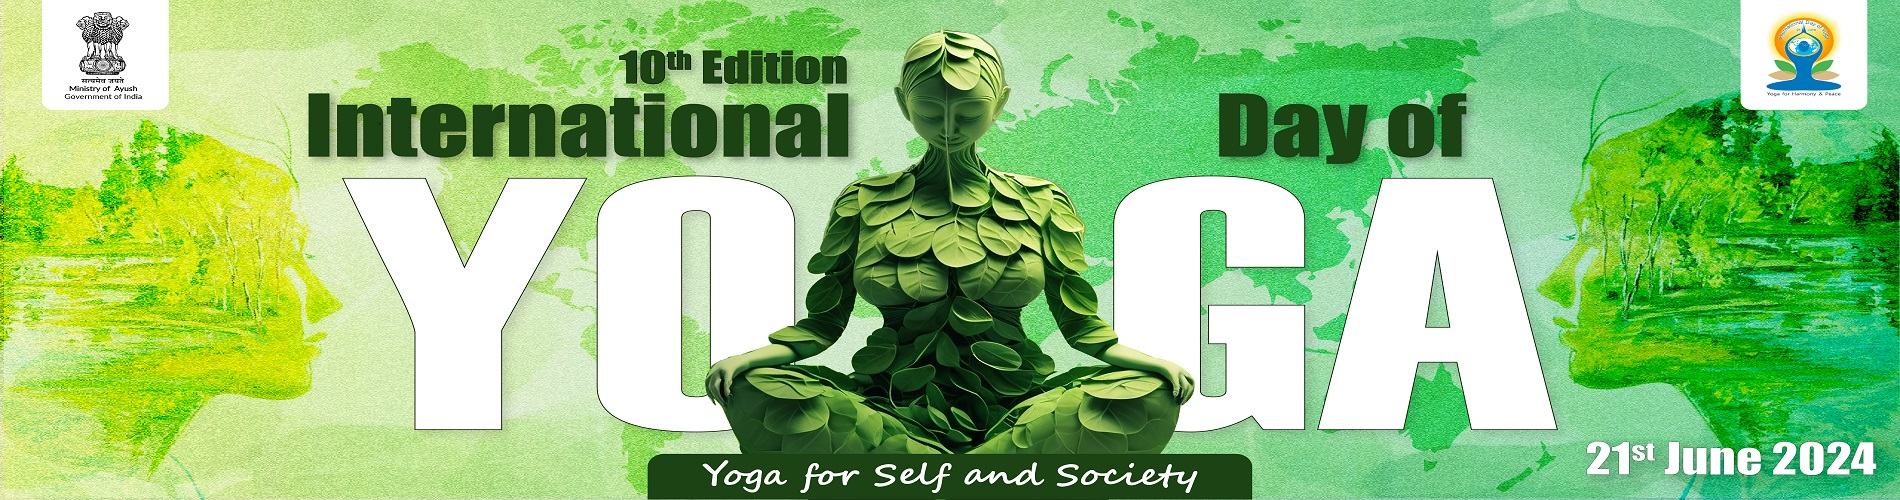 10th Edition International Yoga Day